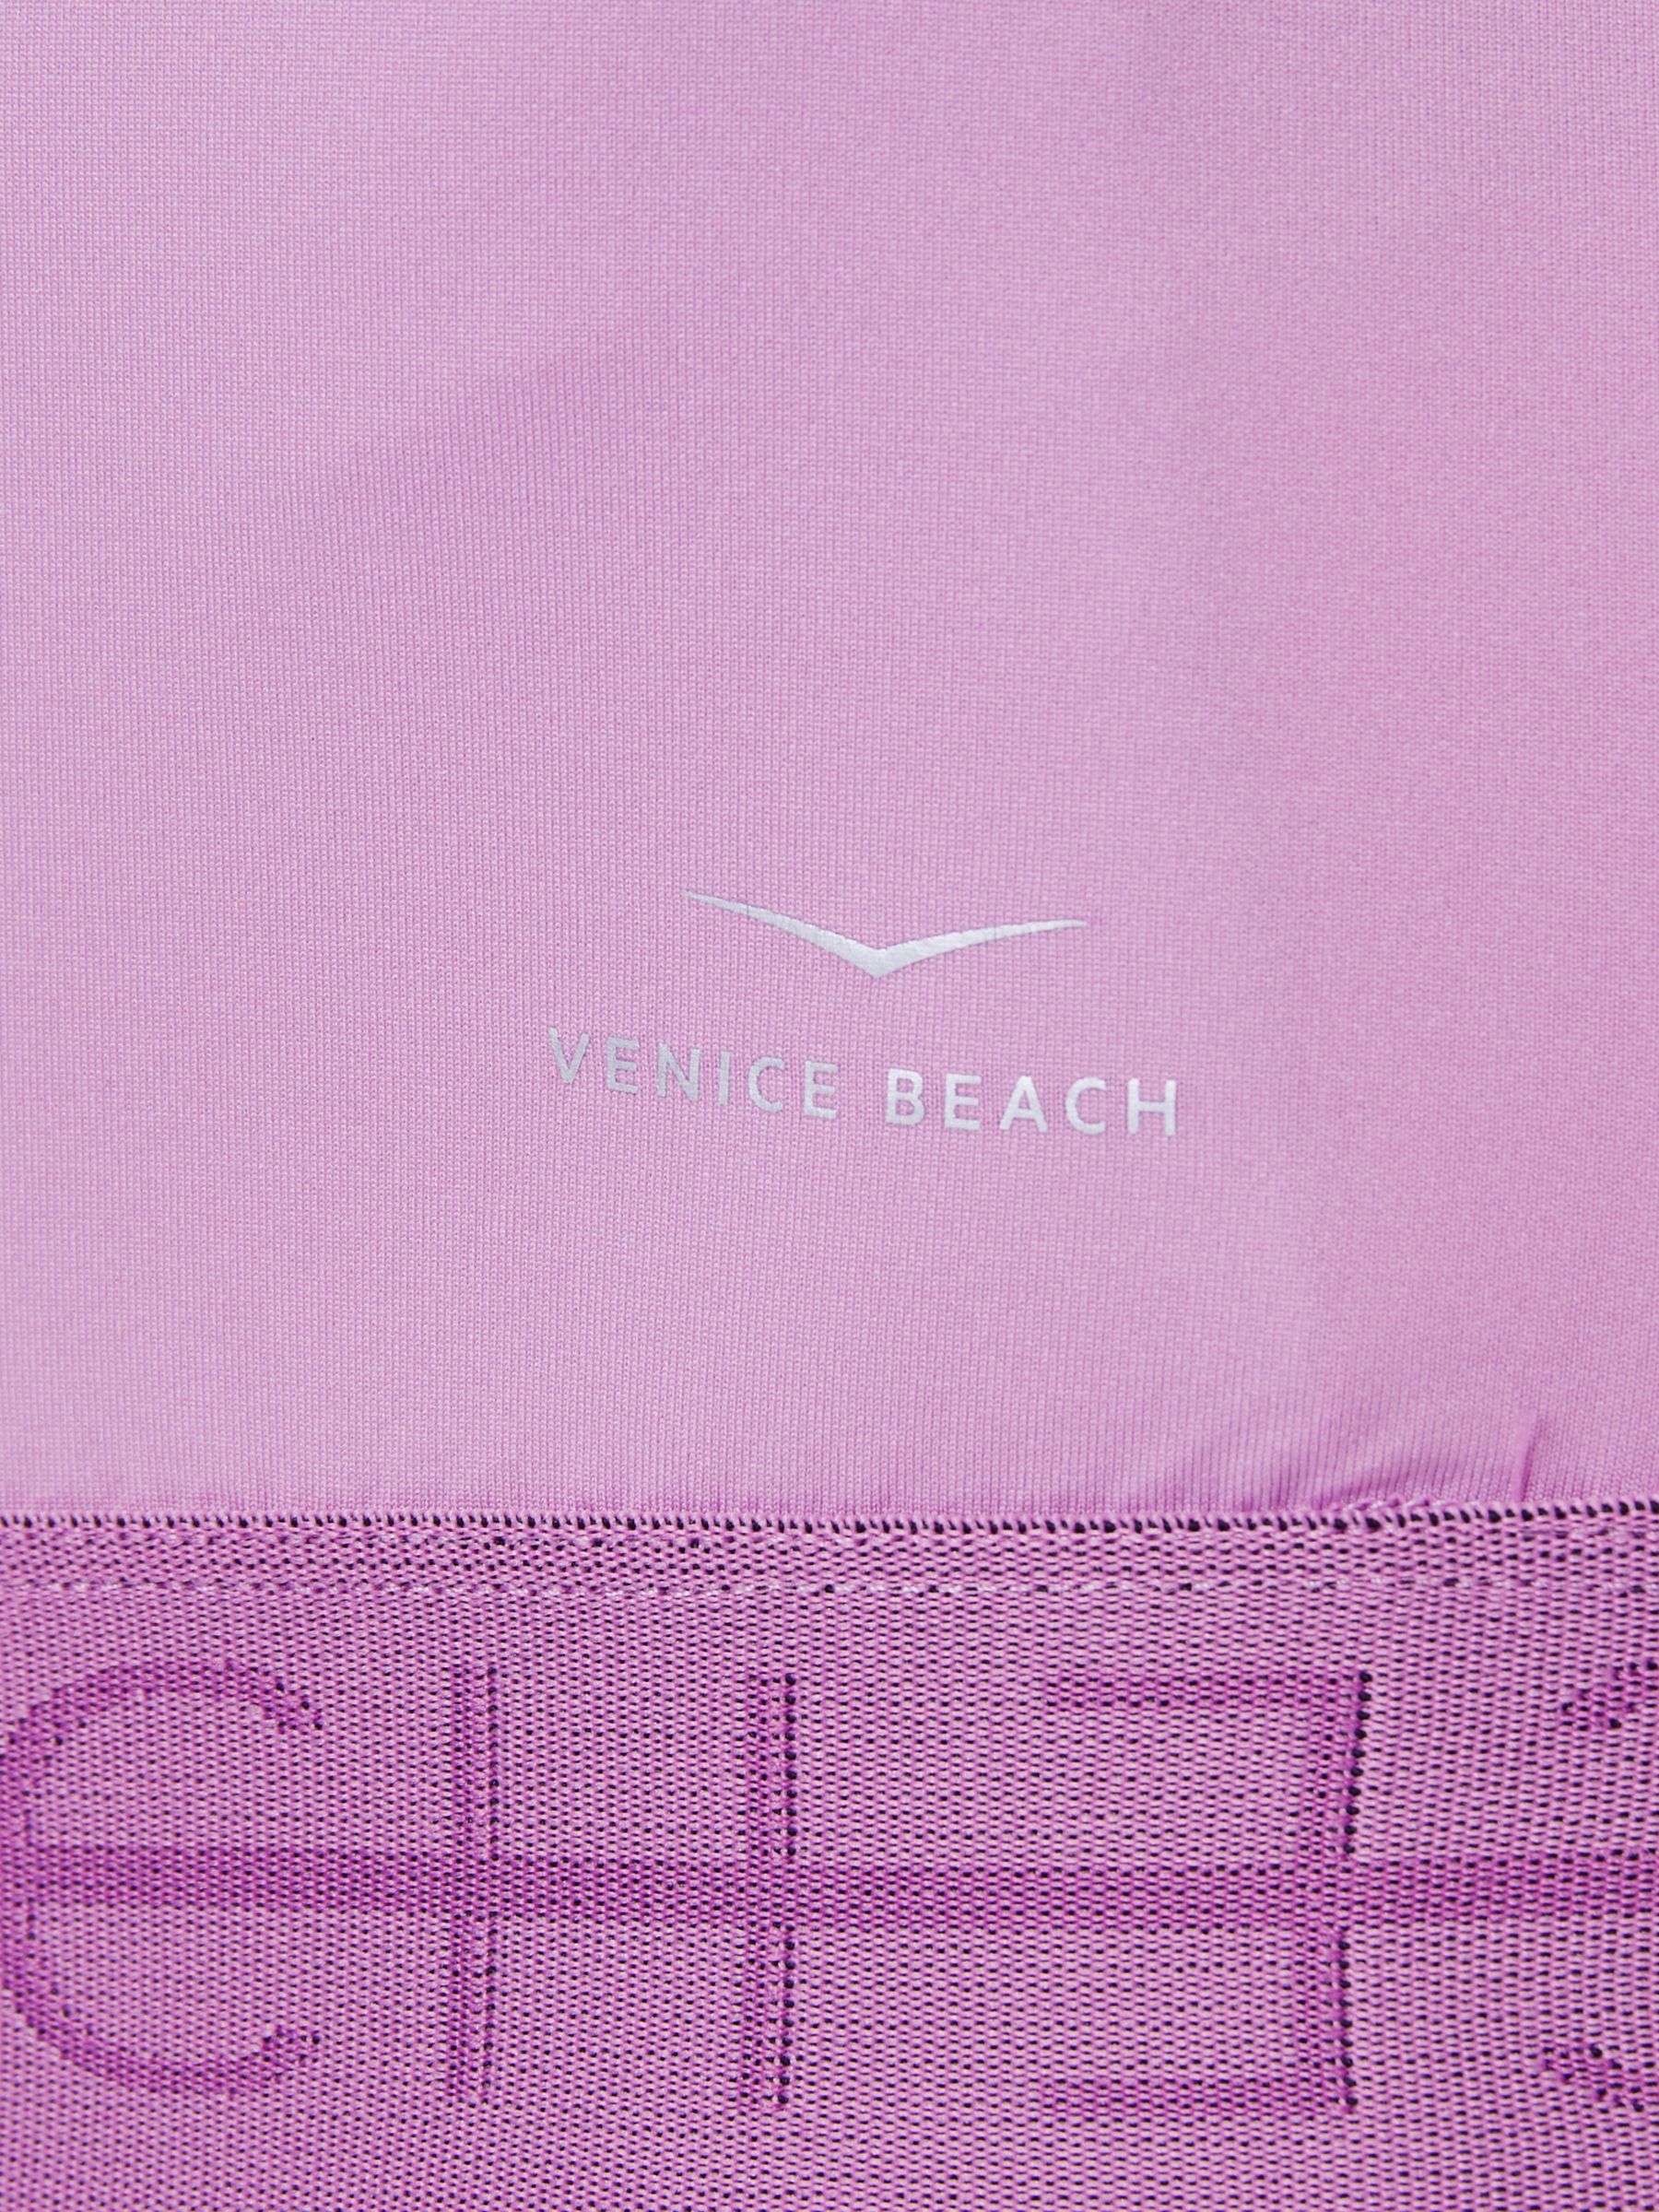 Venice Beach Melodie Training T-Shirt, Pale Mauve, XS